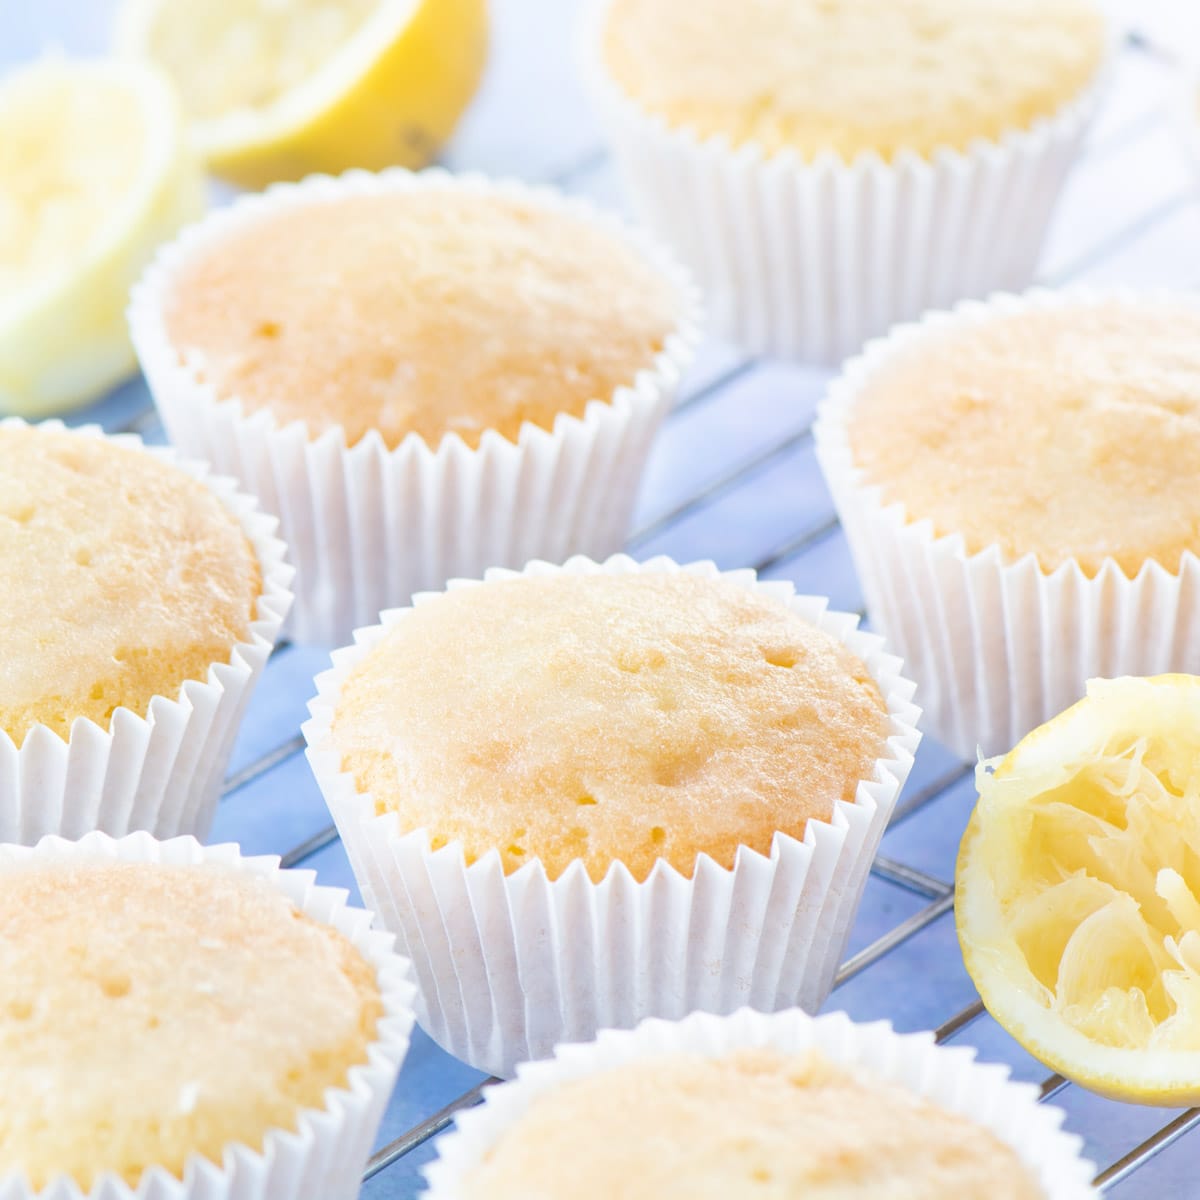 Lemon Drizzle Cupcakes